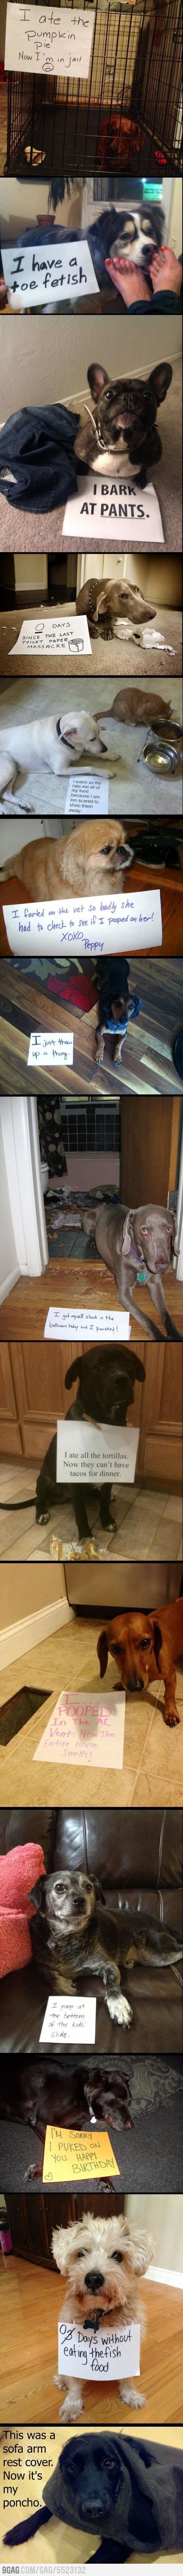 Dog shaming – hahahah